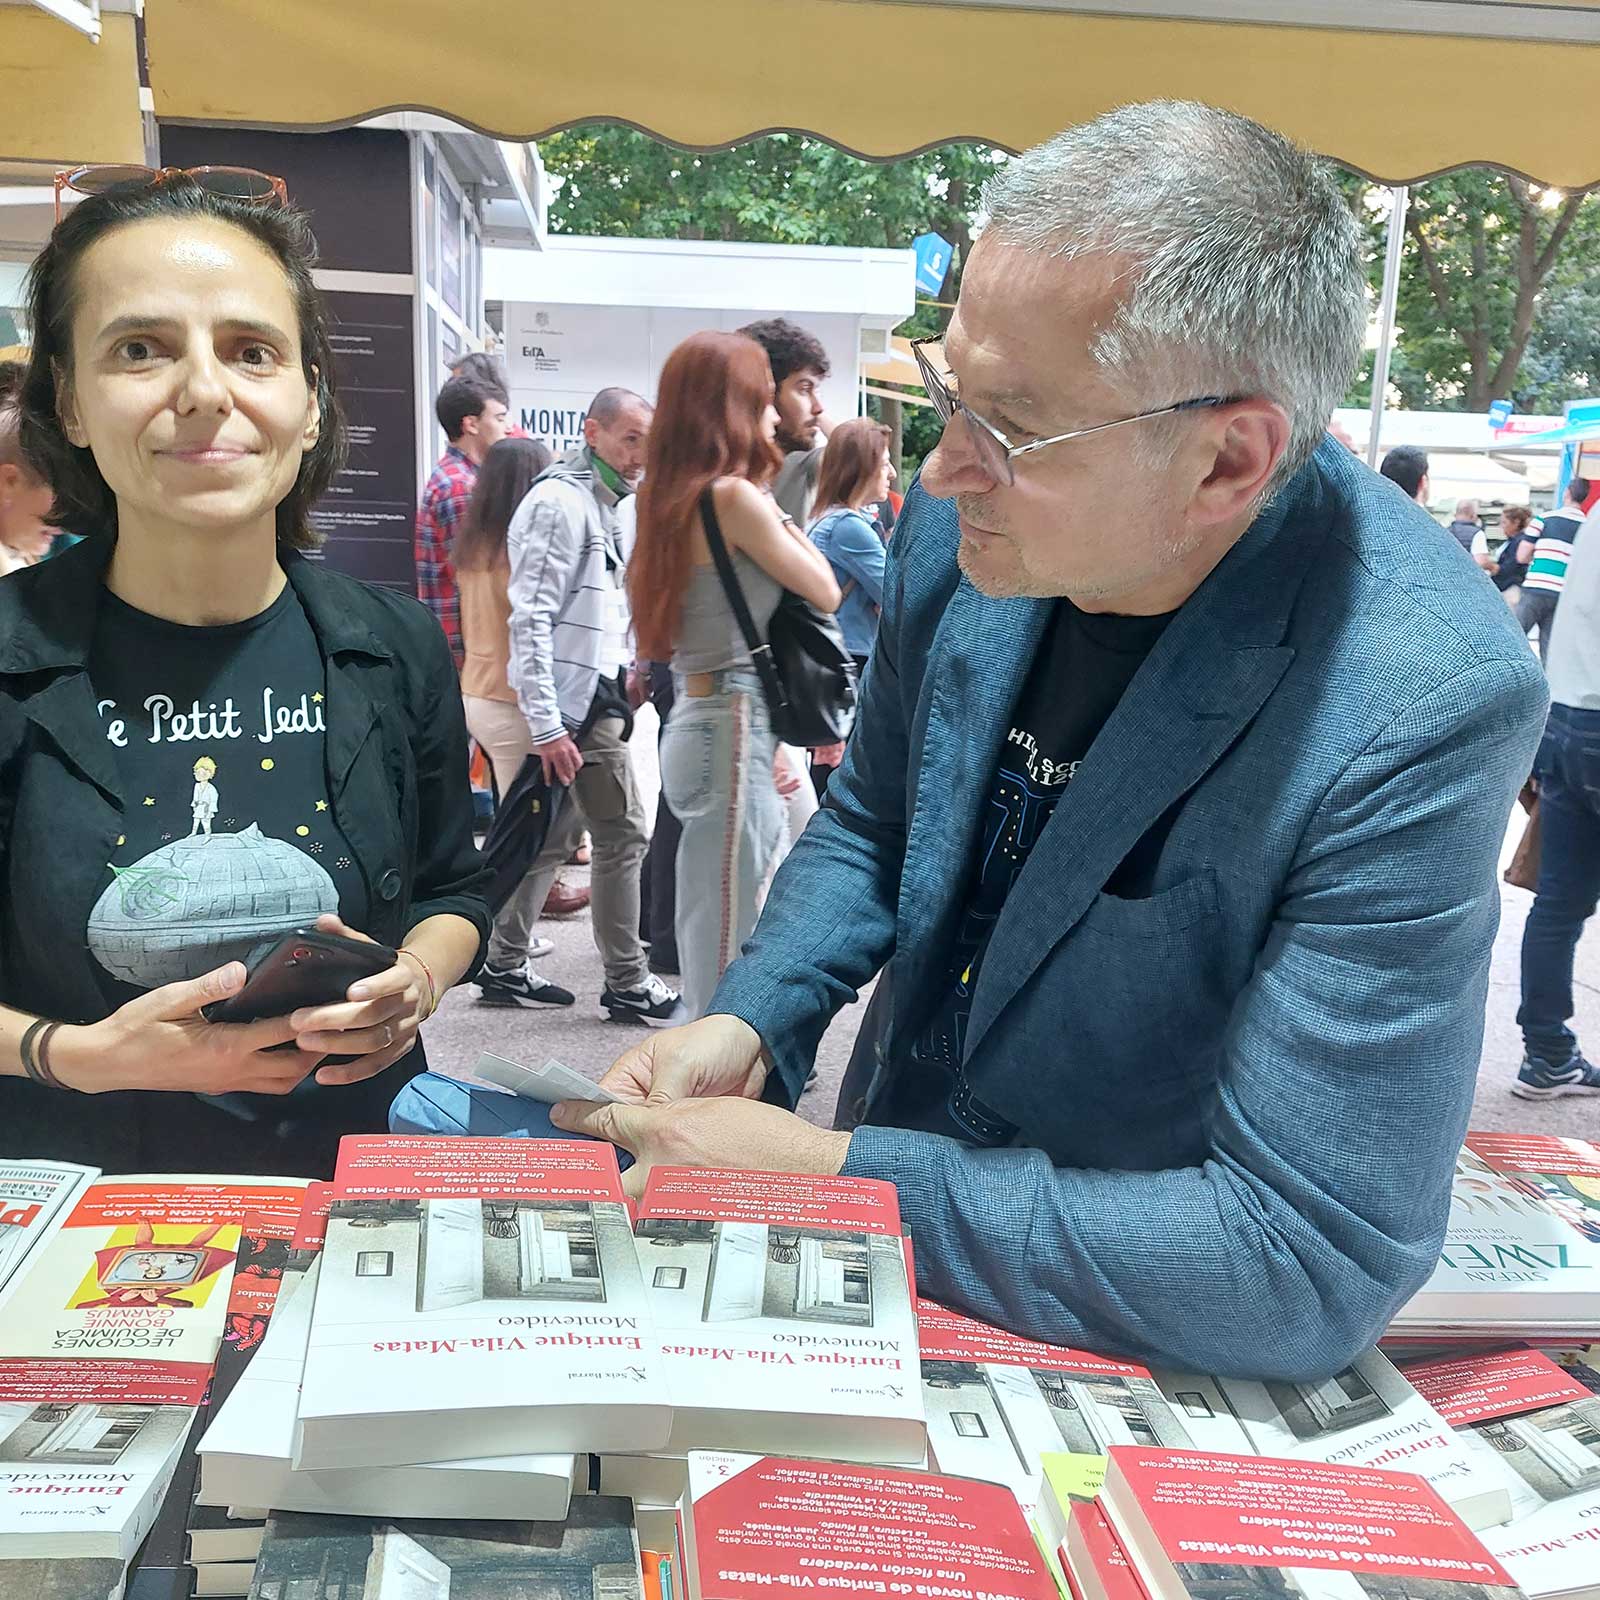 Gospodinov con su traductora al español en la caseta de librería Alberti